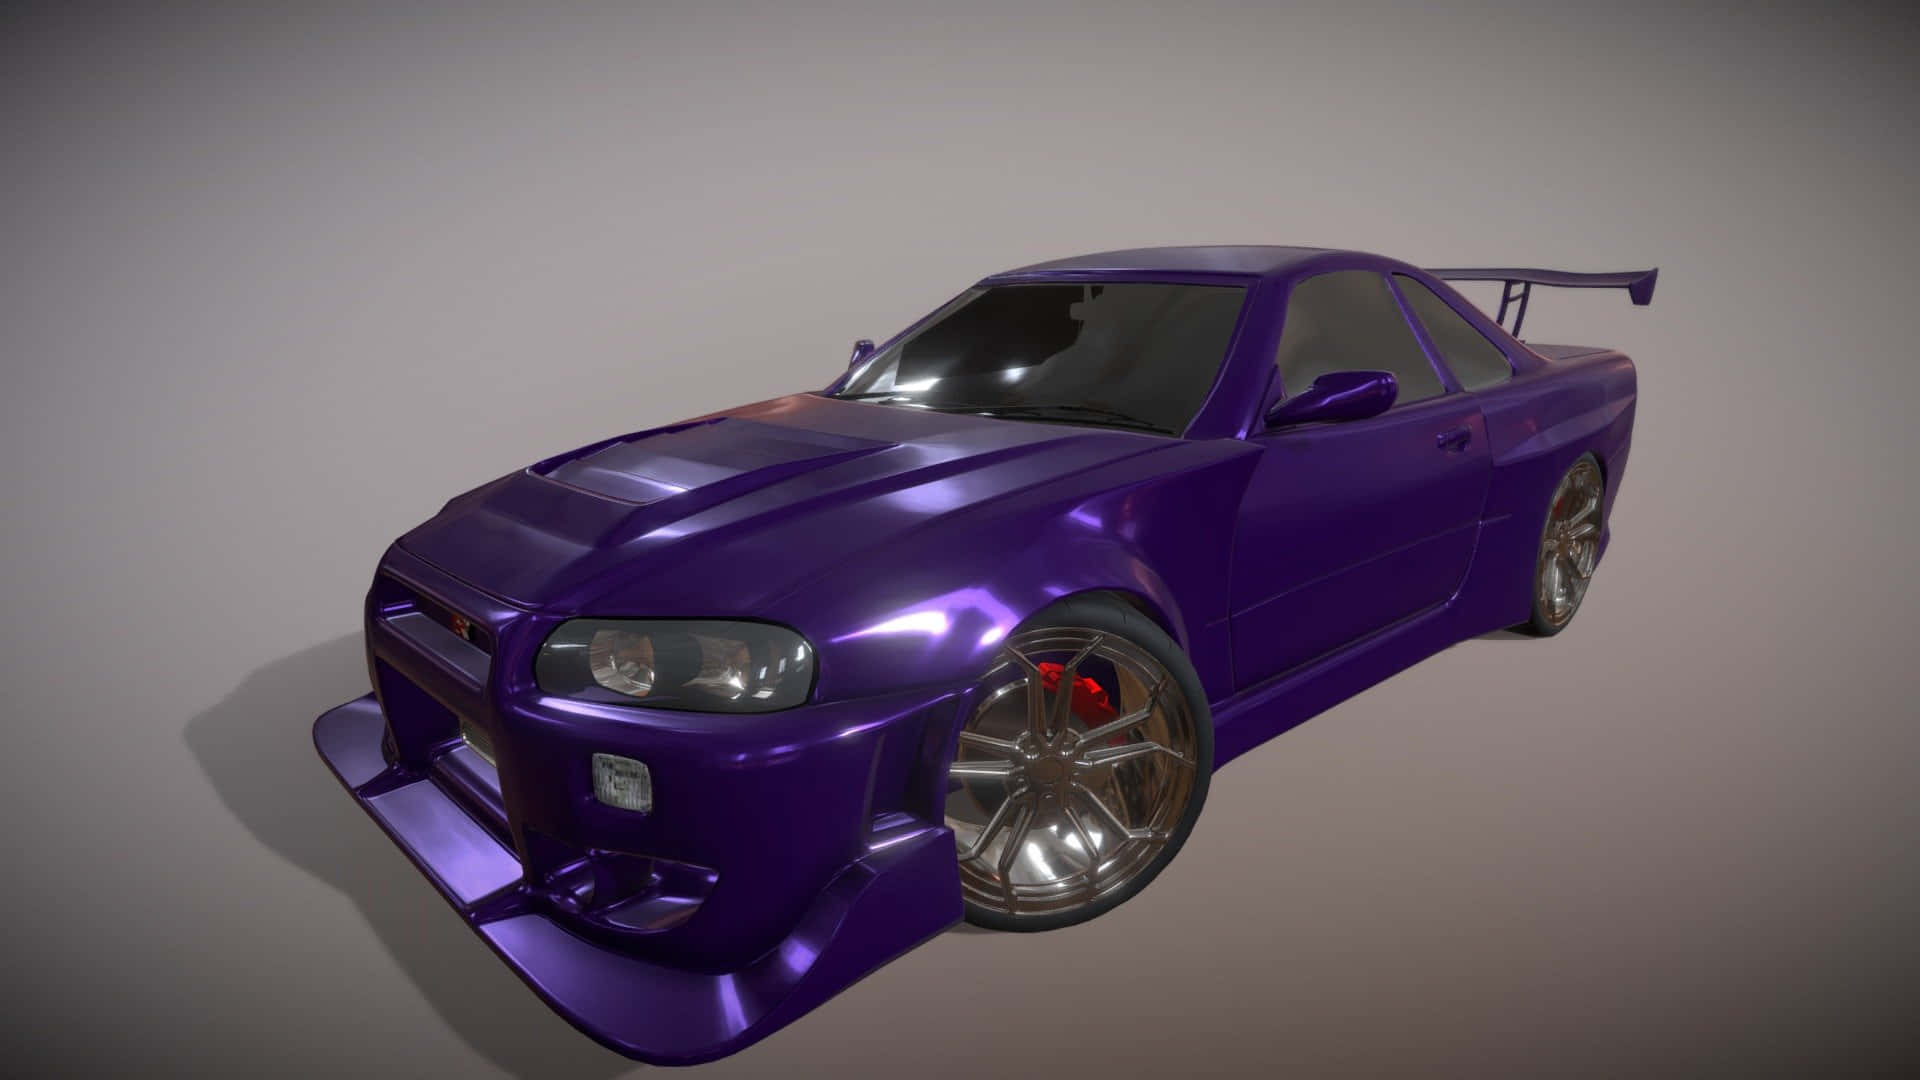 a purple car is shown in a 3d model Wallpaper